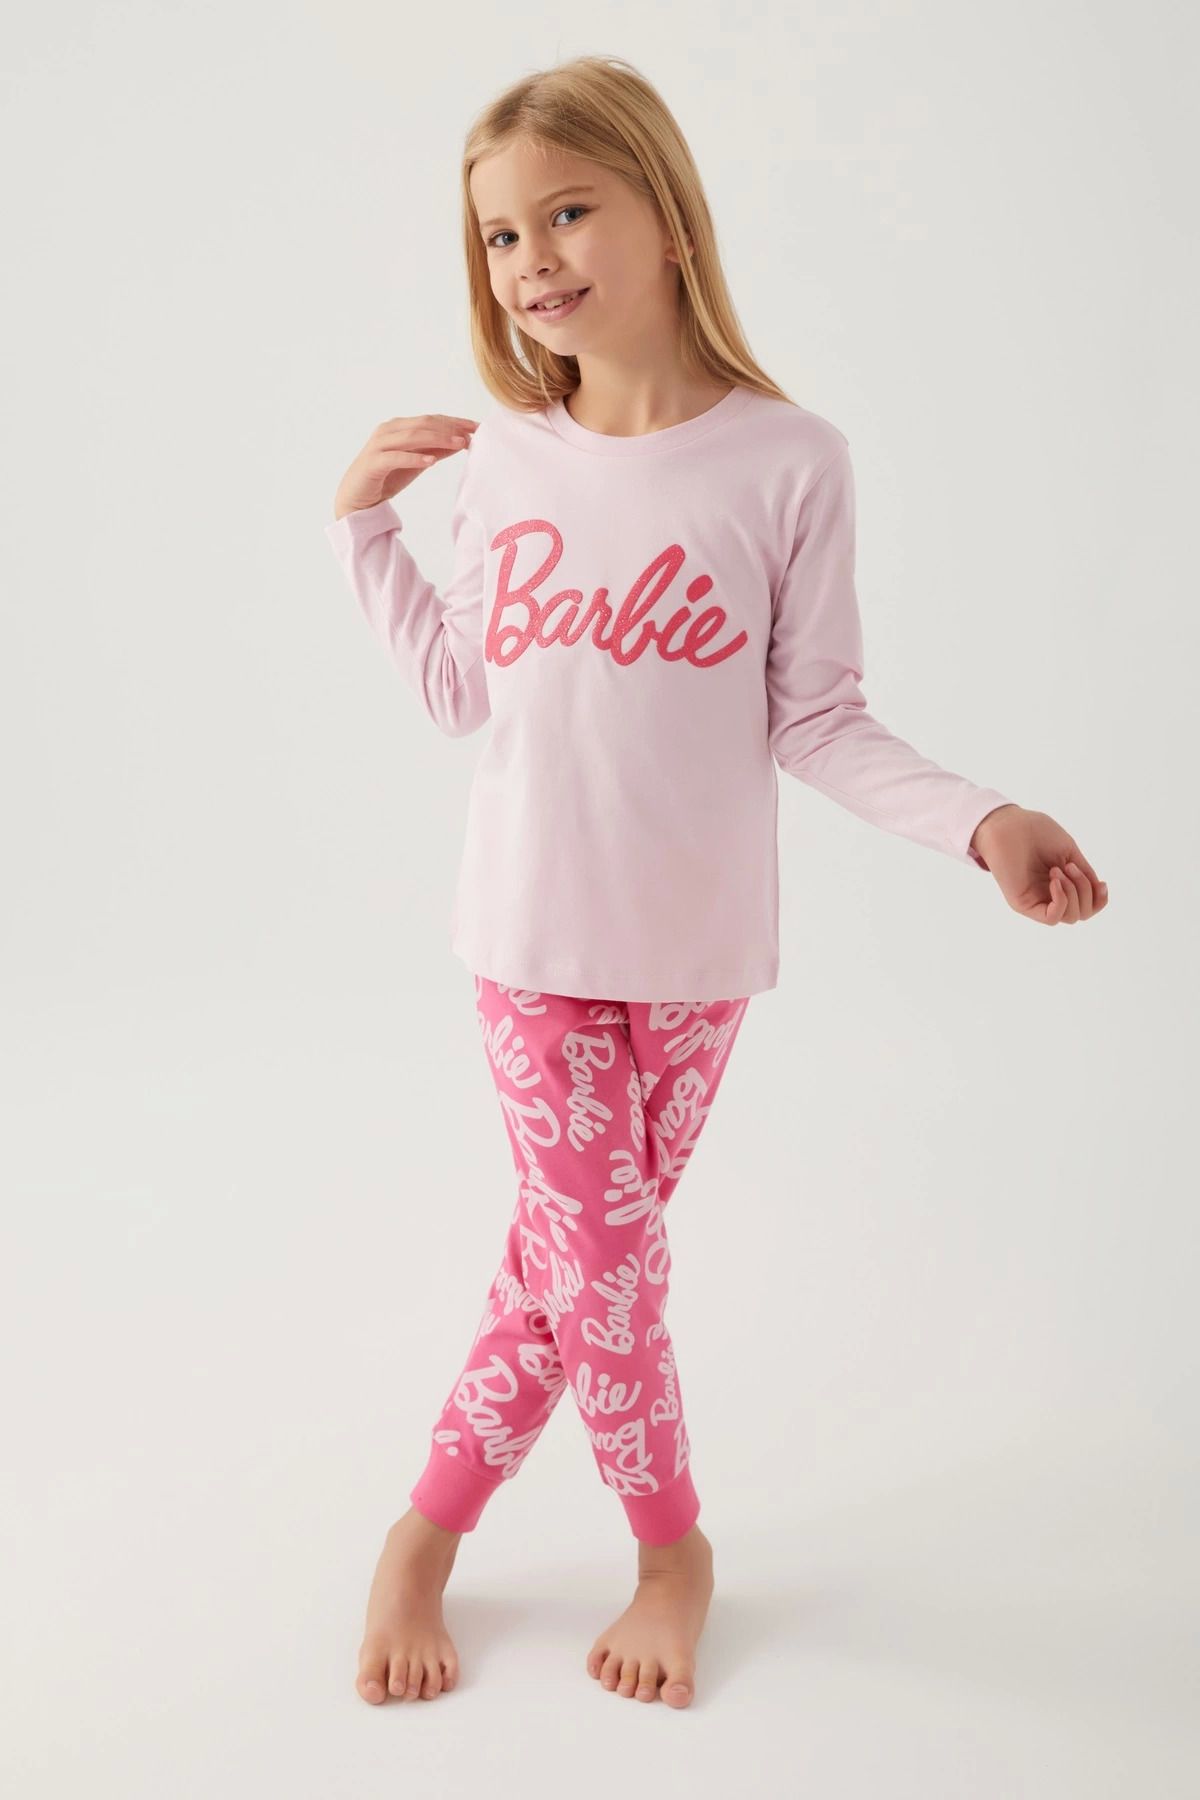 Pierre Cardin Barbie L1766-G Kız Çocuk Uzun Kol Pijama Takımı